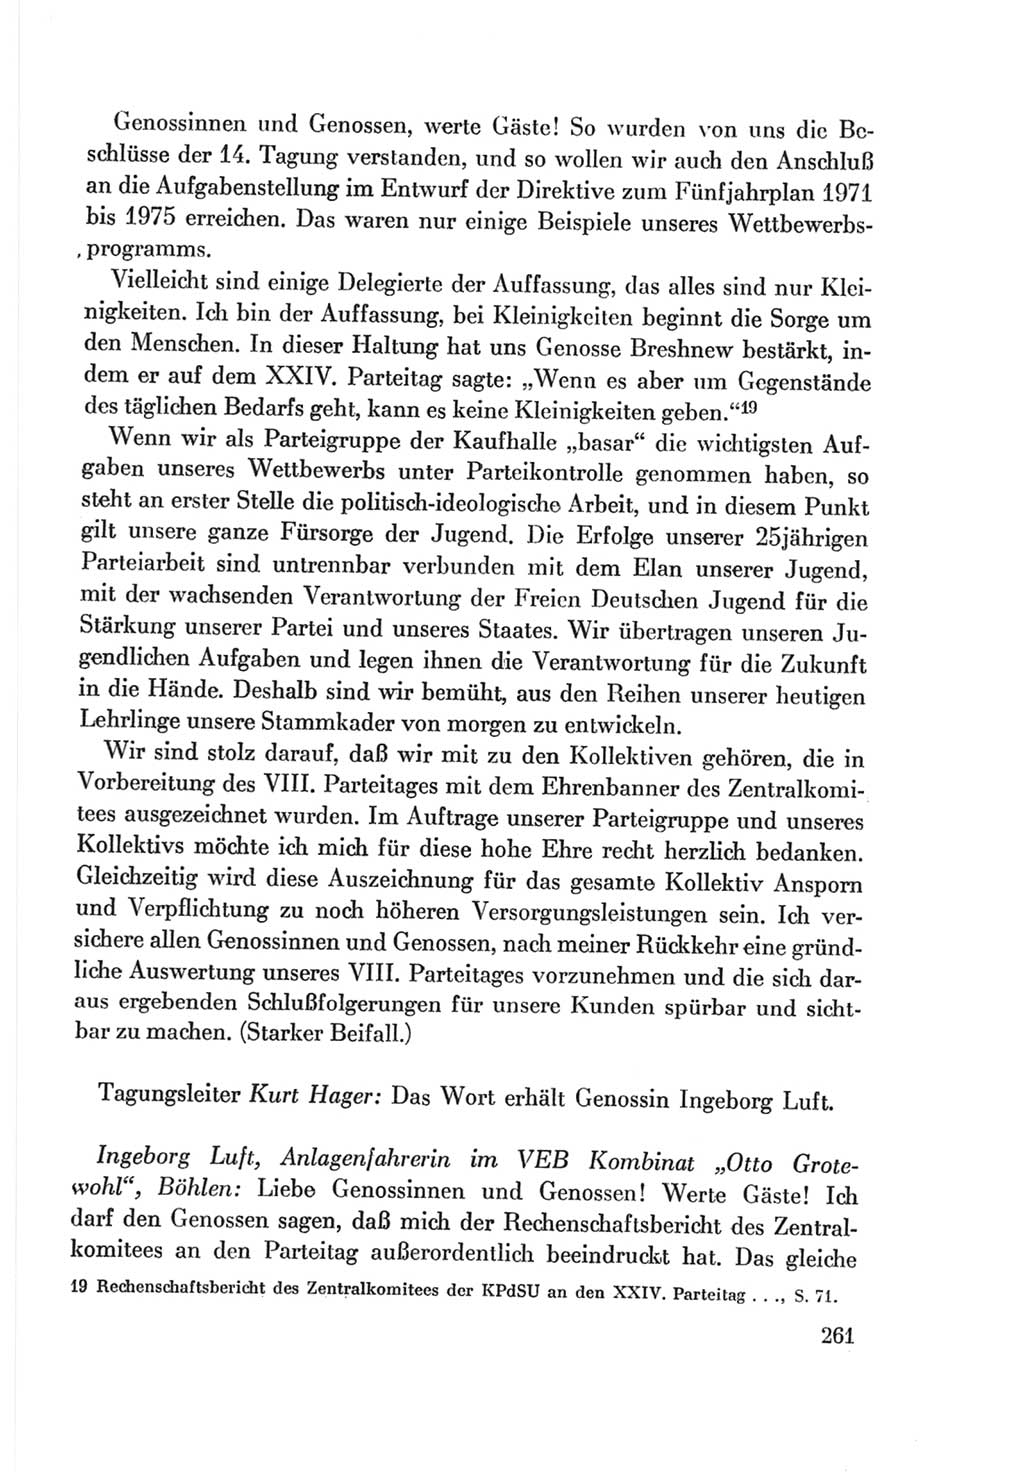 Protokoll der Verhandlungen des Ⅷ. Parteitages der Sozialistischen Einheitspartei Deutschlands (SED) [Deutsche Demokratische Republik (DDR)] 1971, Band 1, Seite 261 (Prot. Verh. Ⅷ. PT SED DDR 1971, Bd. 1, S. 261)